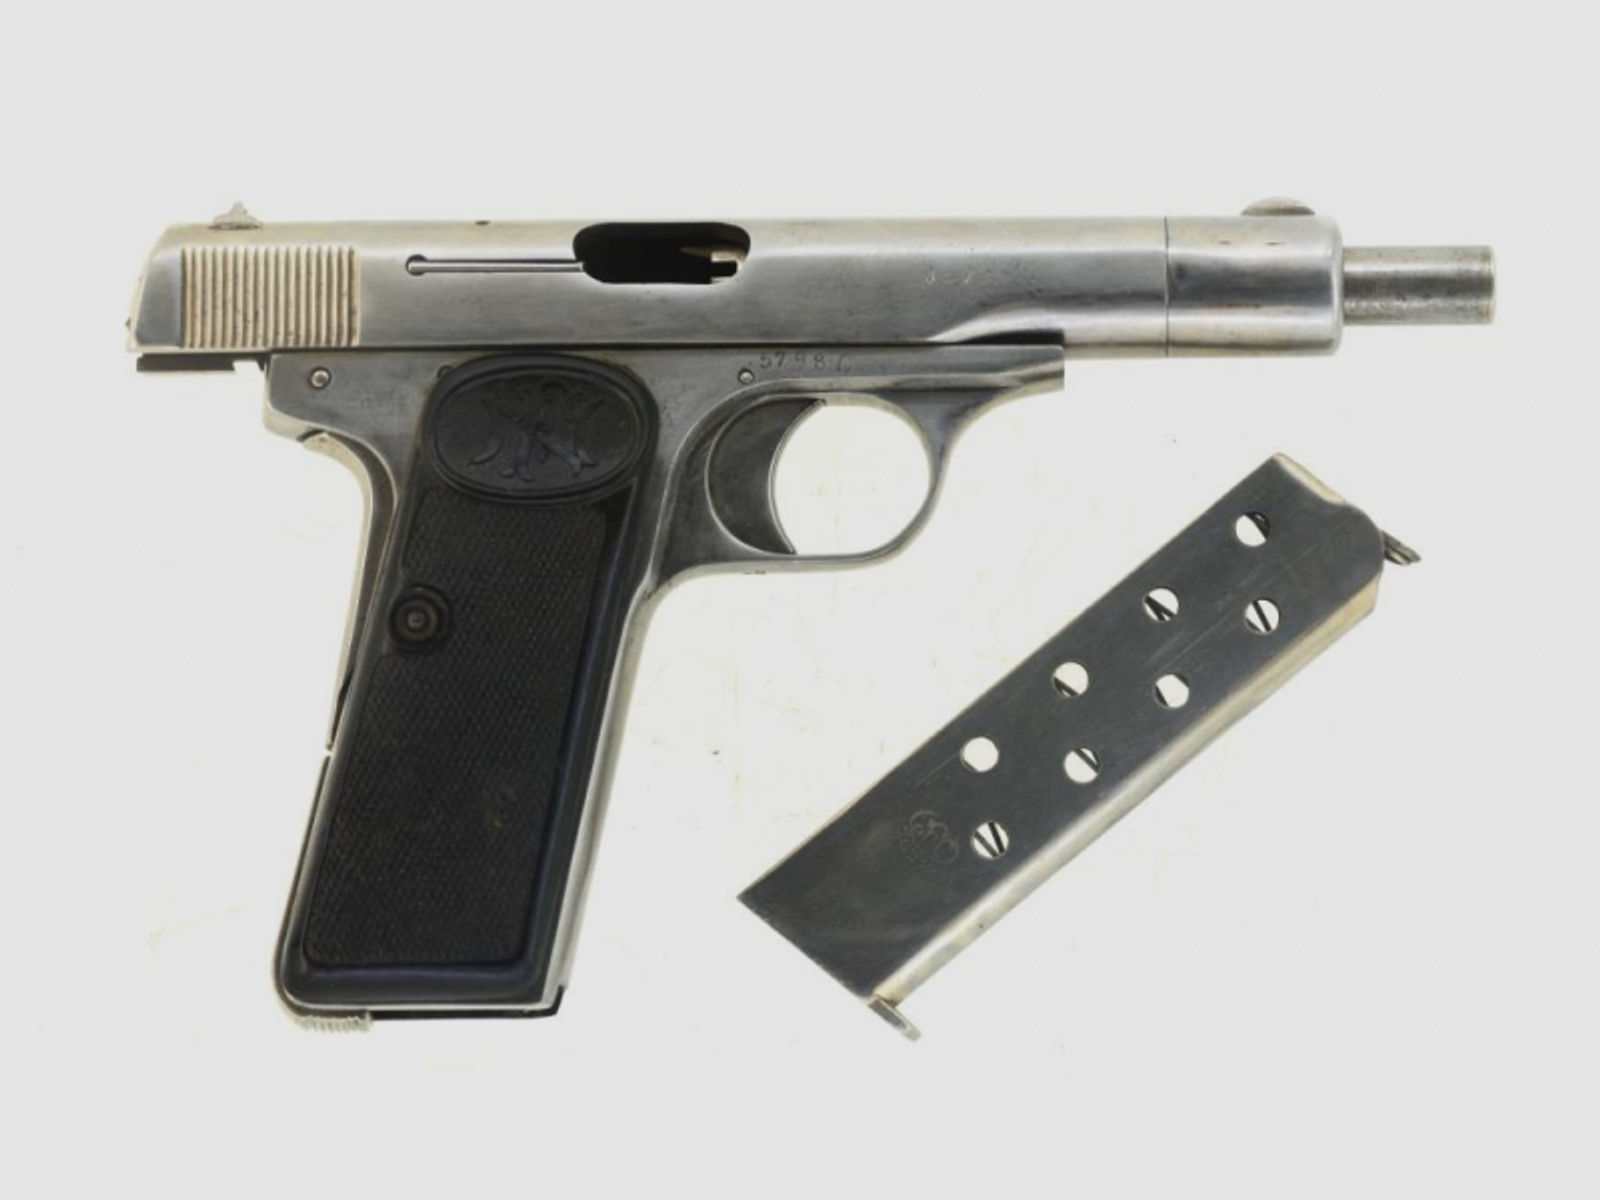 Halbautomatische Pistole Militärwaffe FN Mod. 1910/22 Kaliber 7,65 mm Browning mit WaA Abnahmen